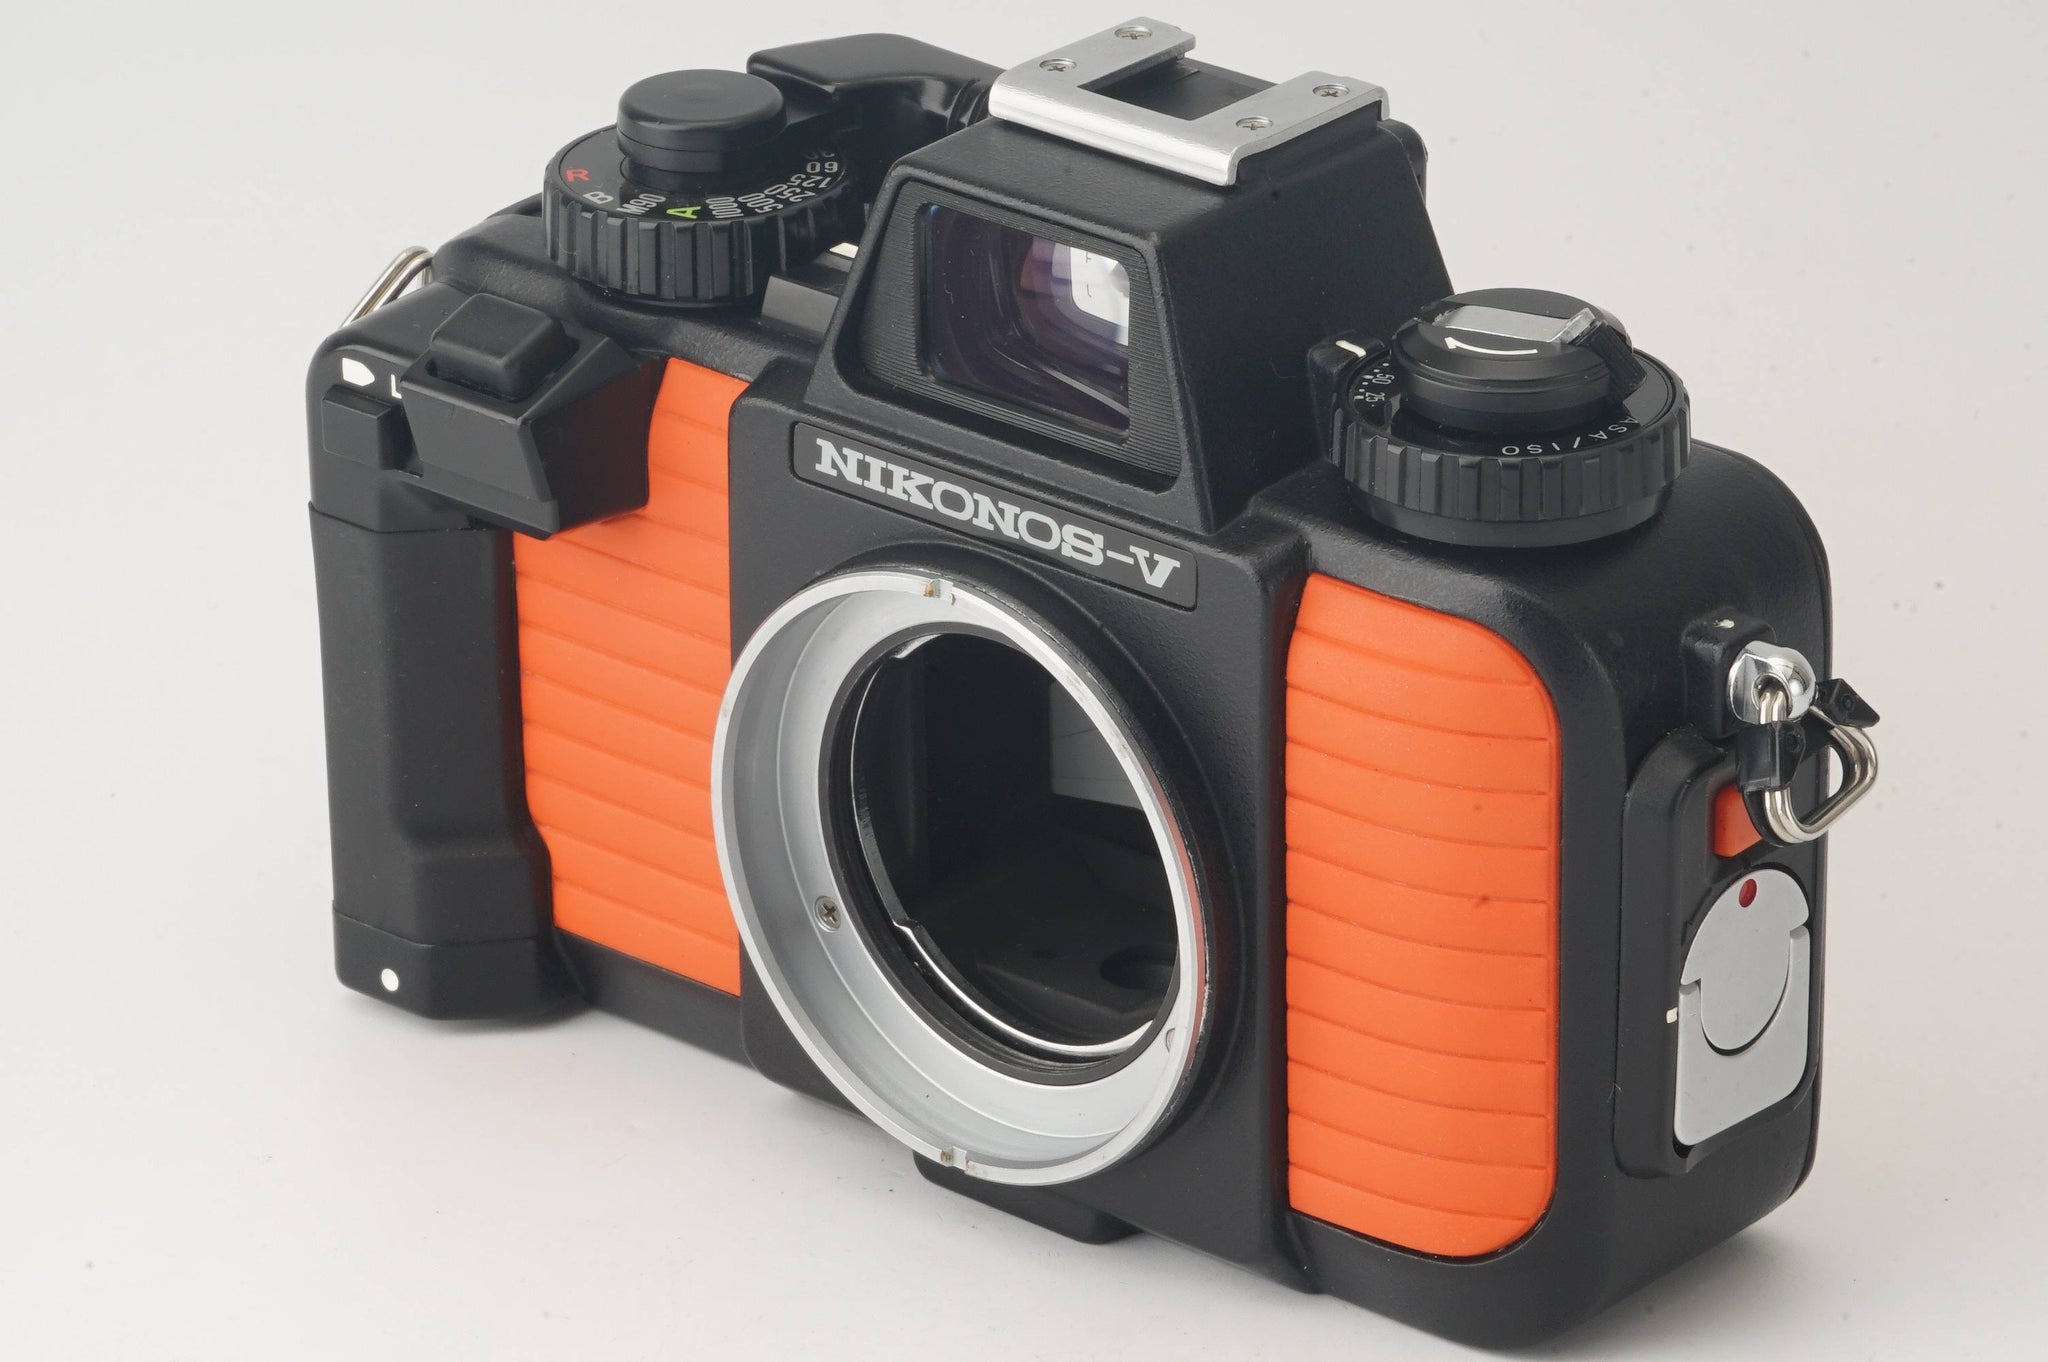 NIKONOS-V 水中カメラ Nikon フィルムカメラ オールドカメラその点を御理解いただける方の